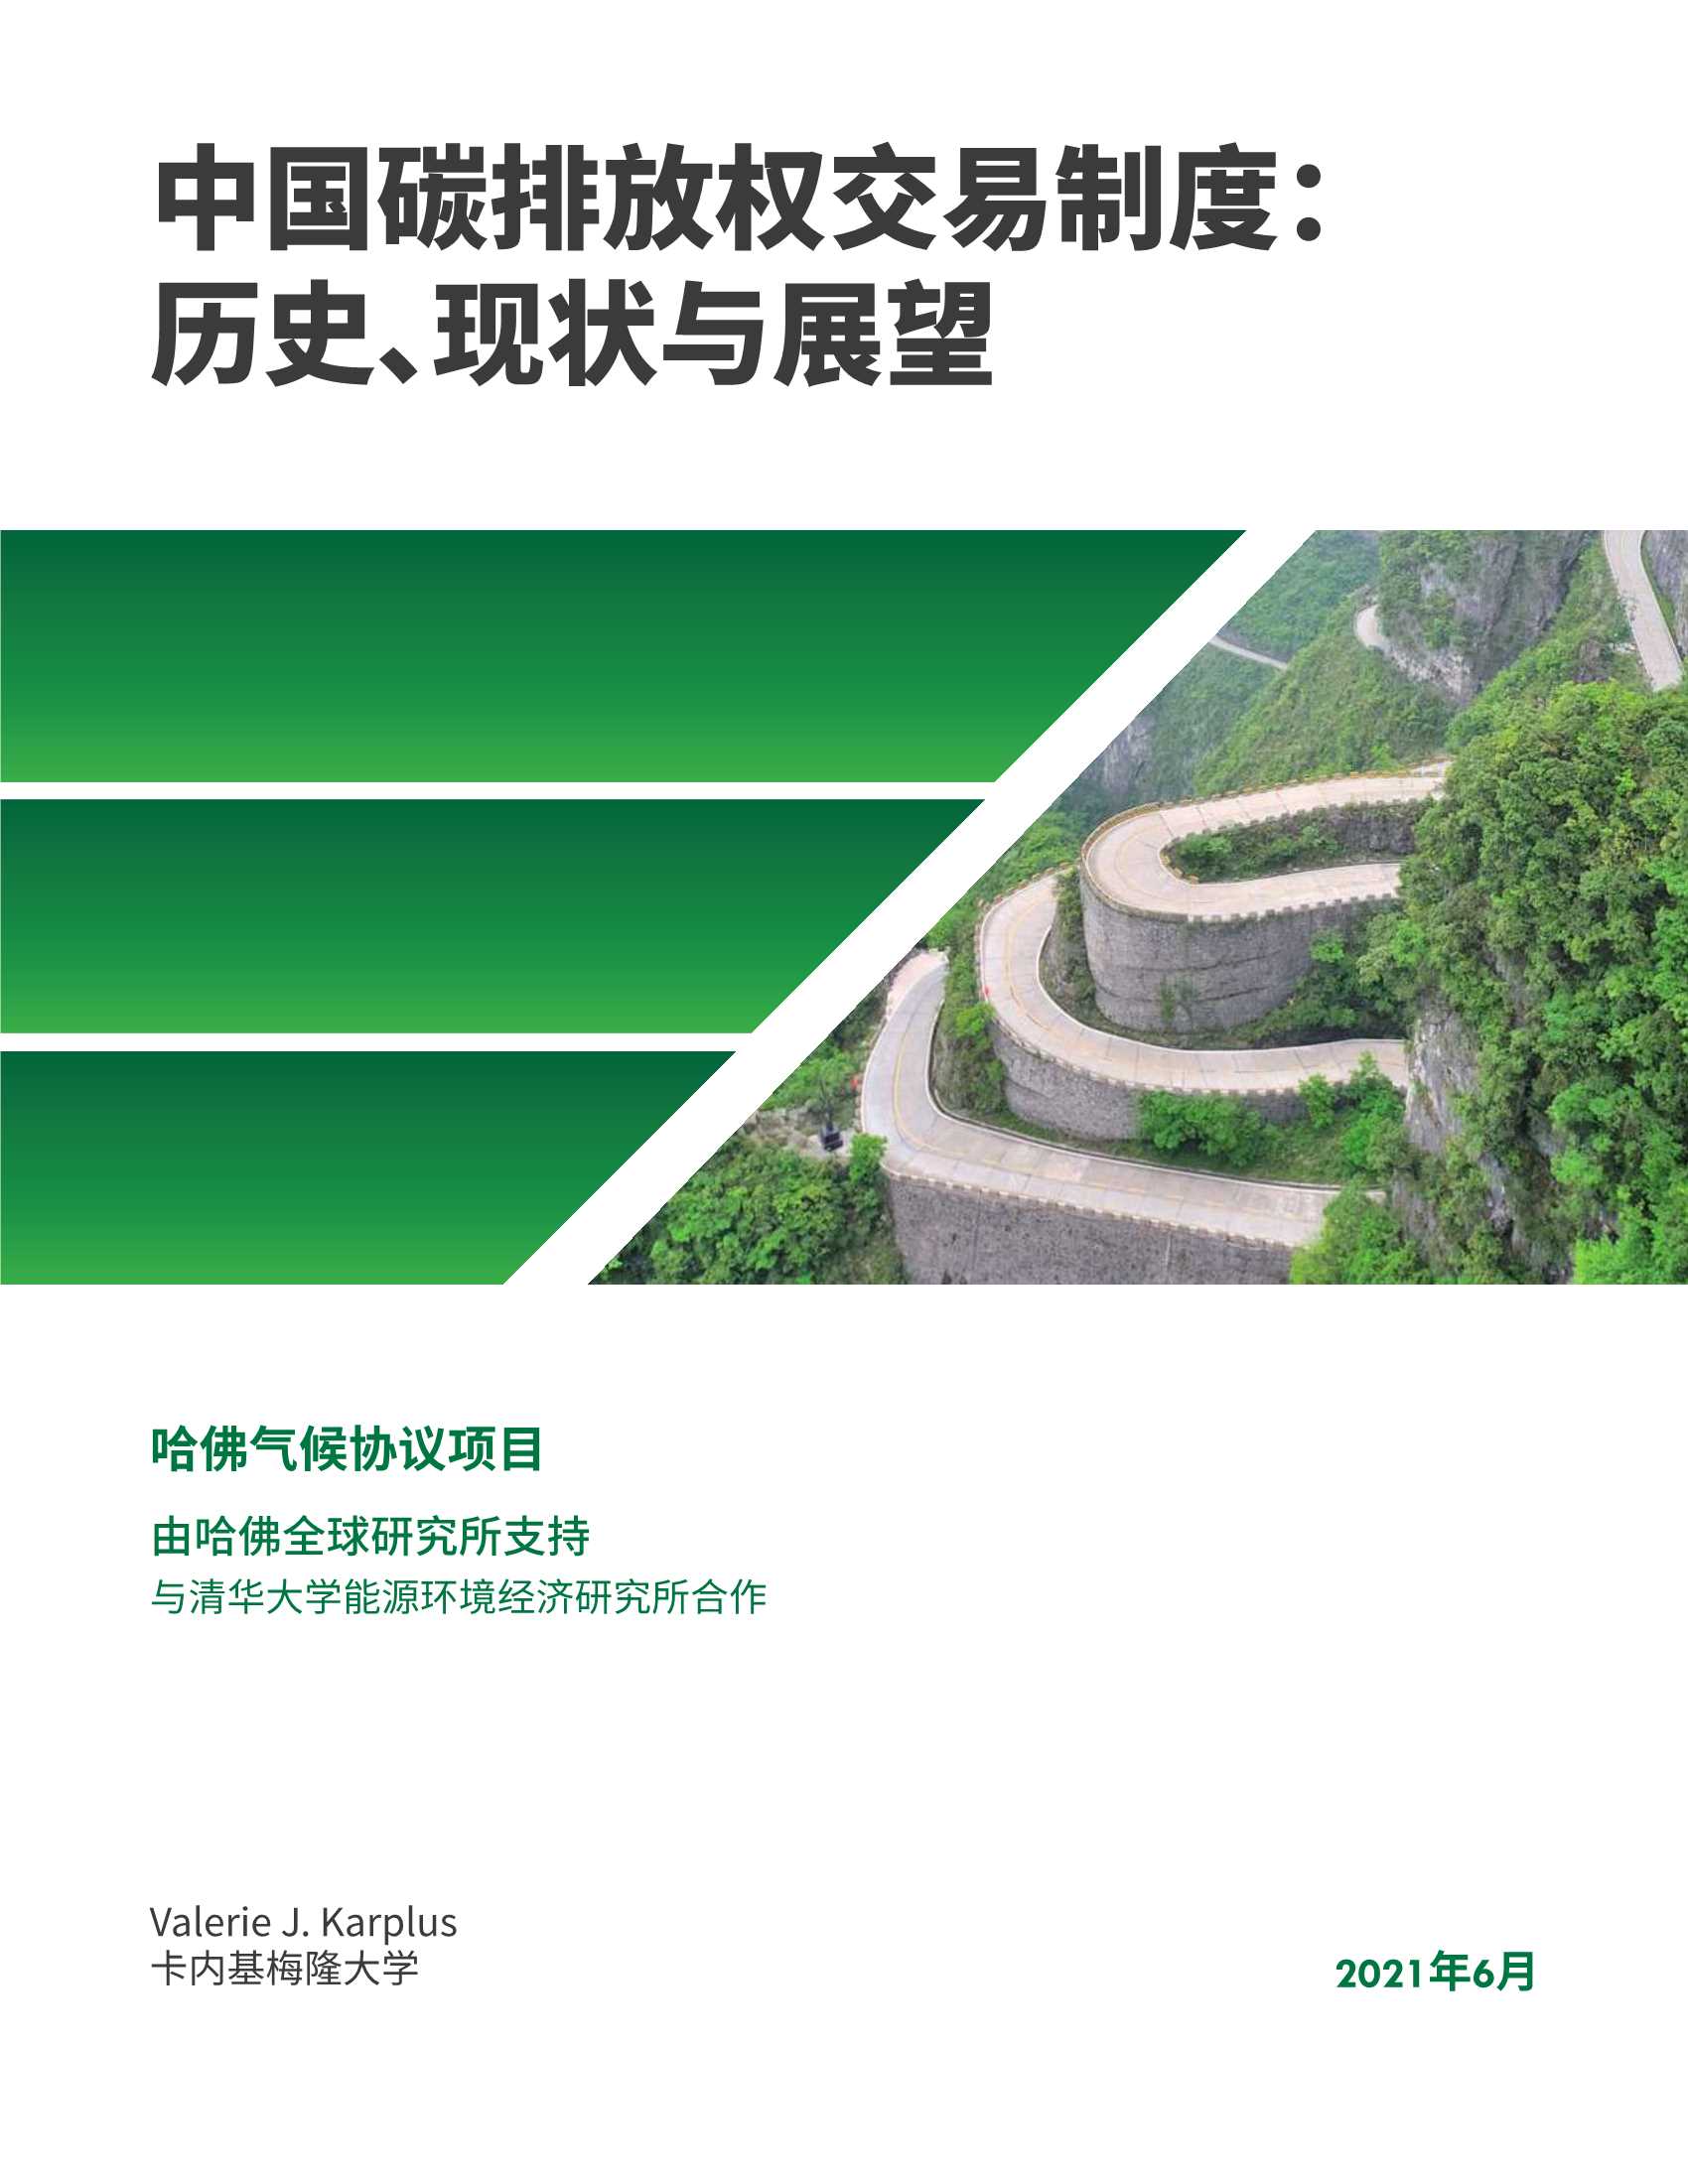 哈佛大学肯尼迪学院-中国二氧化碳排放交易制度：历史、现状与展望-2021.06-39页